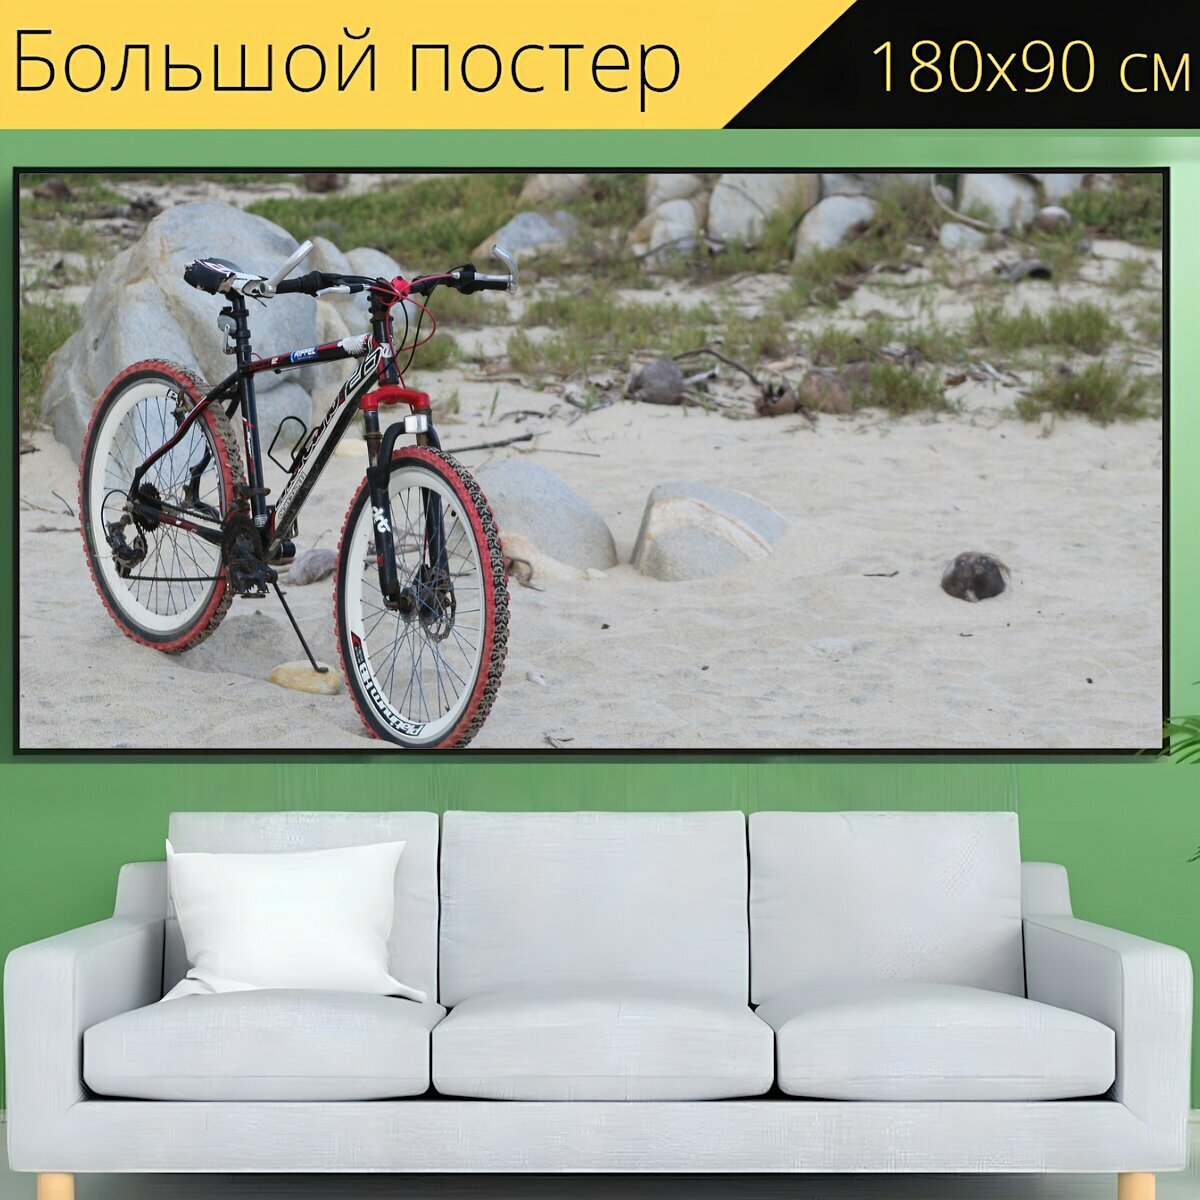 Большой постер "Велосипед, велоспорт, байкер" 180 x 90 см. для интерьера